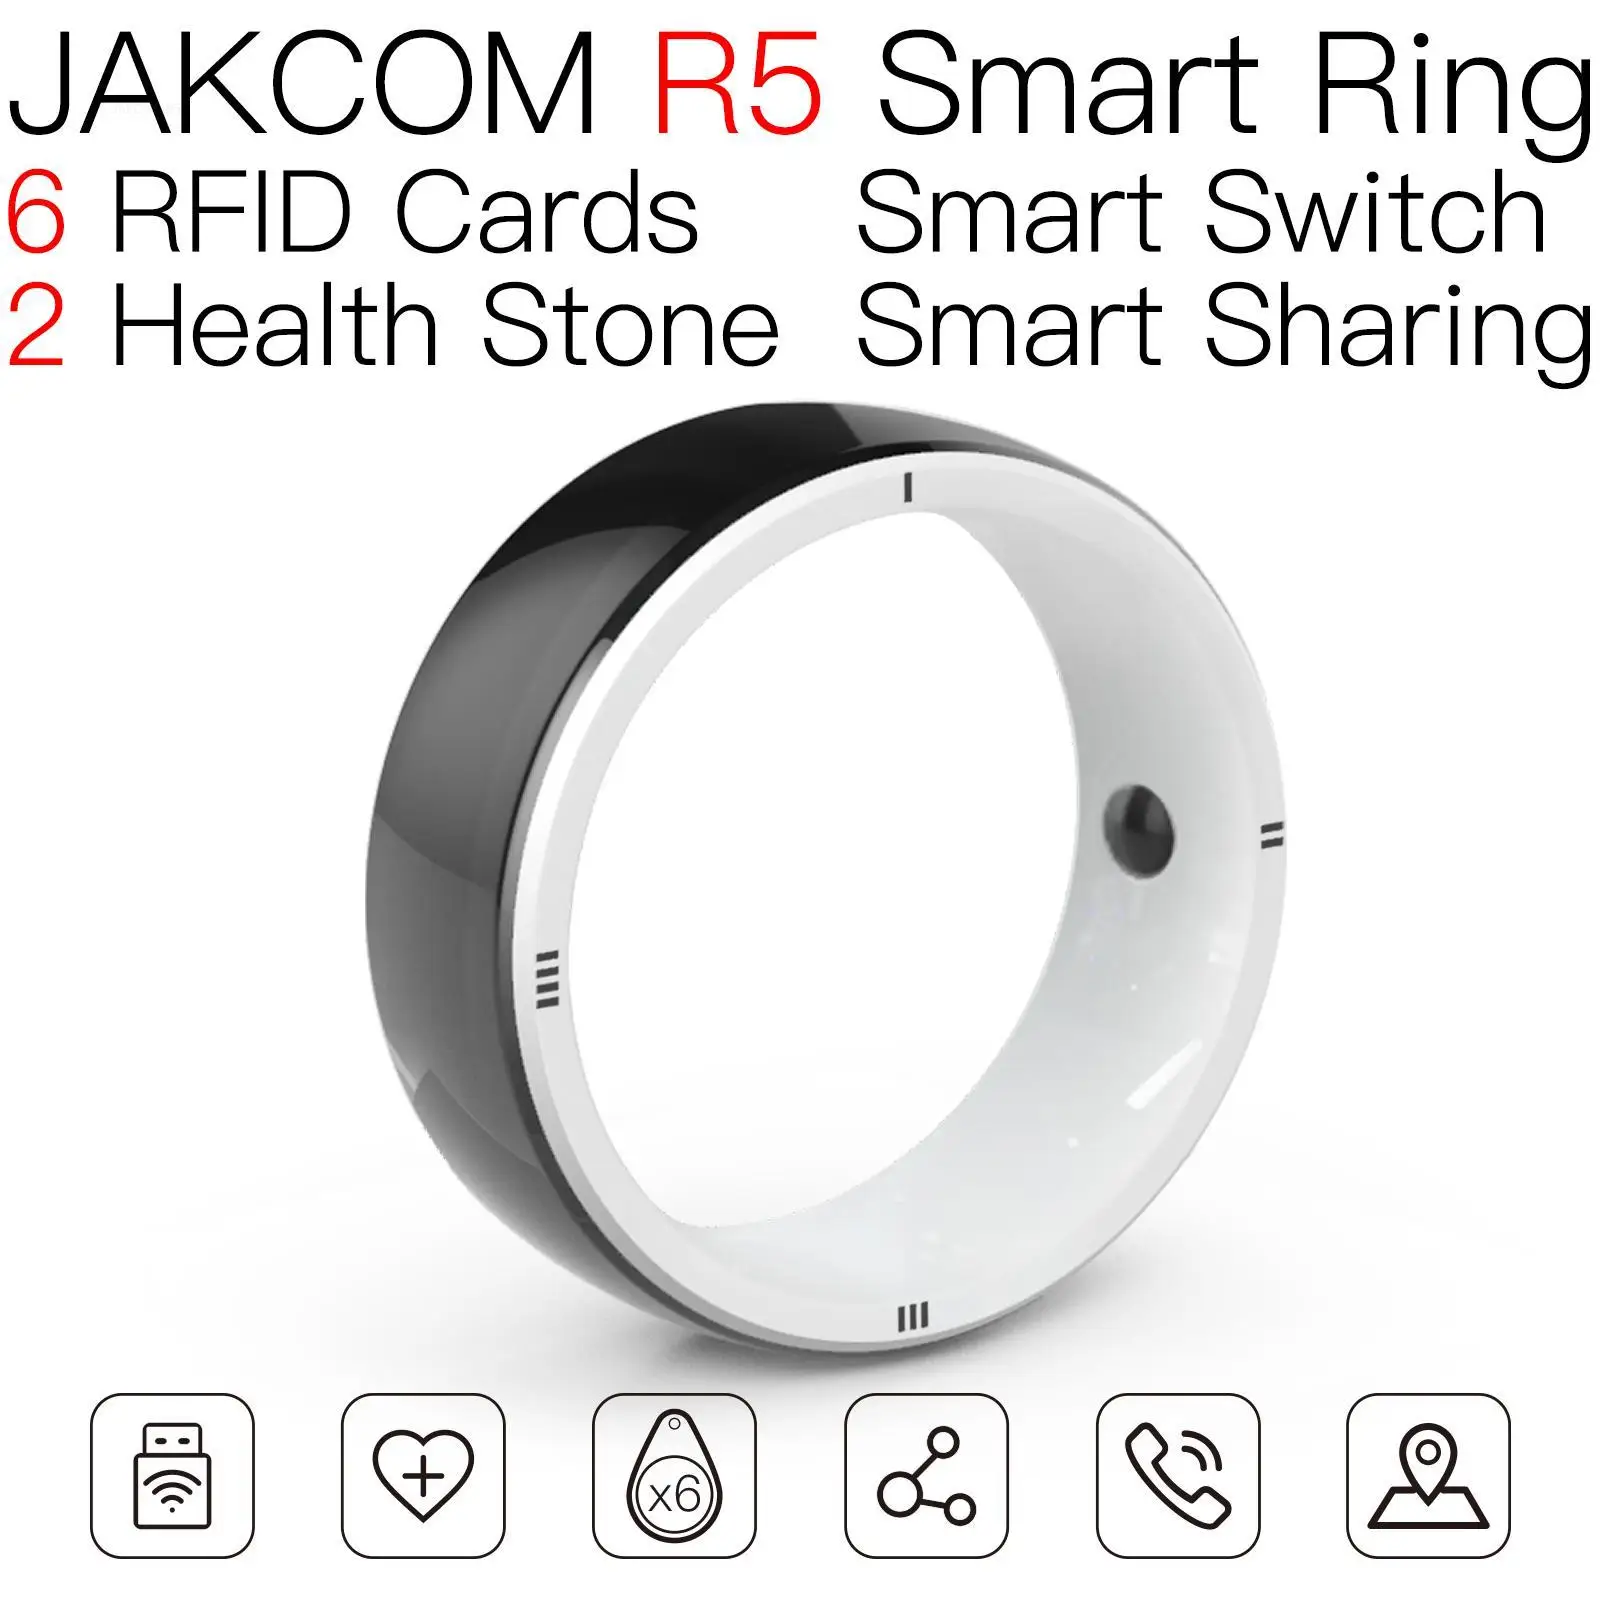 

Умное кольцо JAKCOM R5, лучше, чем в магазине этикеток, 4032 xt, домофон, карта для отеля с радиочастотной идентификацией, пересечение Боба, семейная капсула